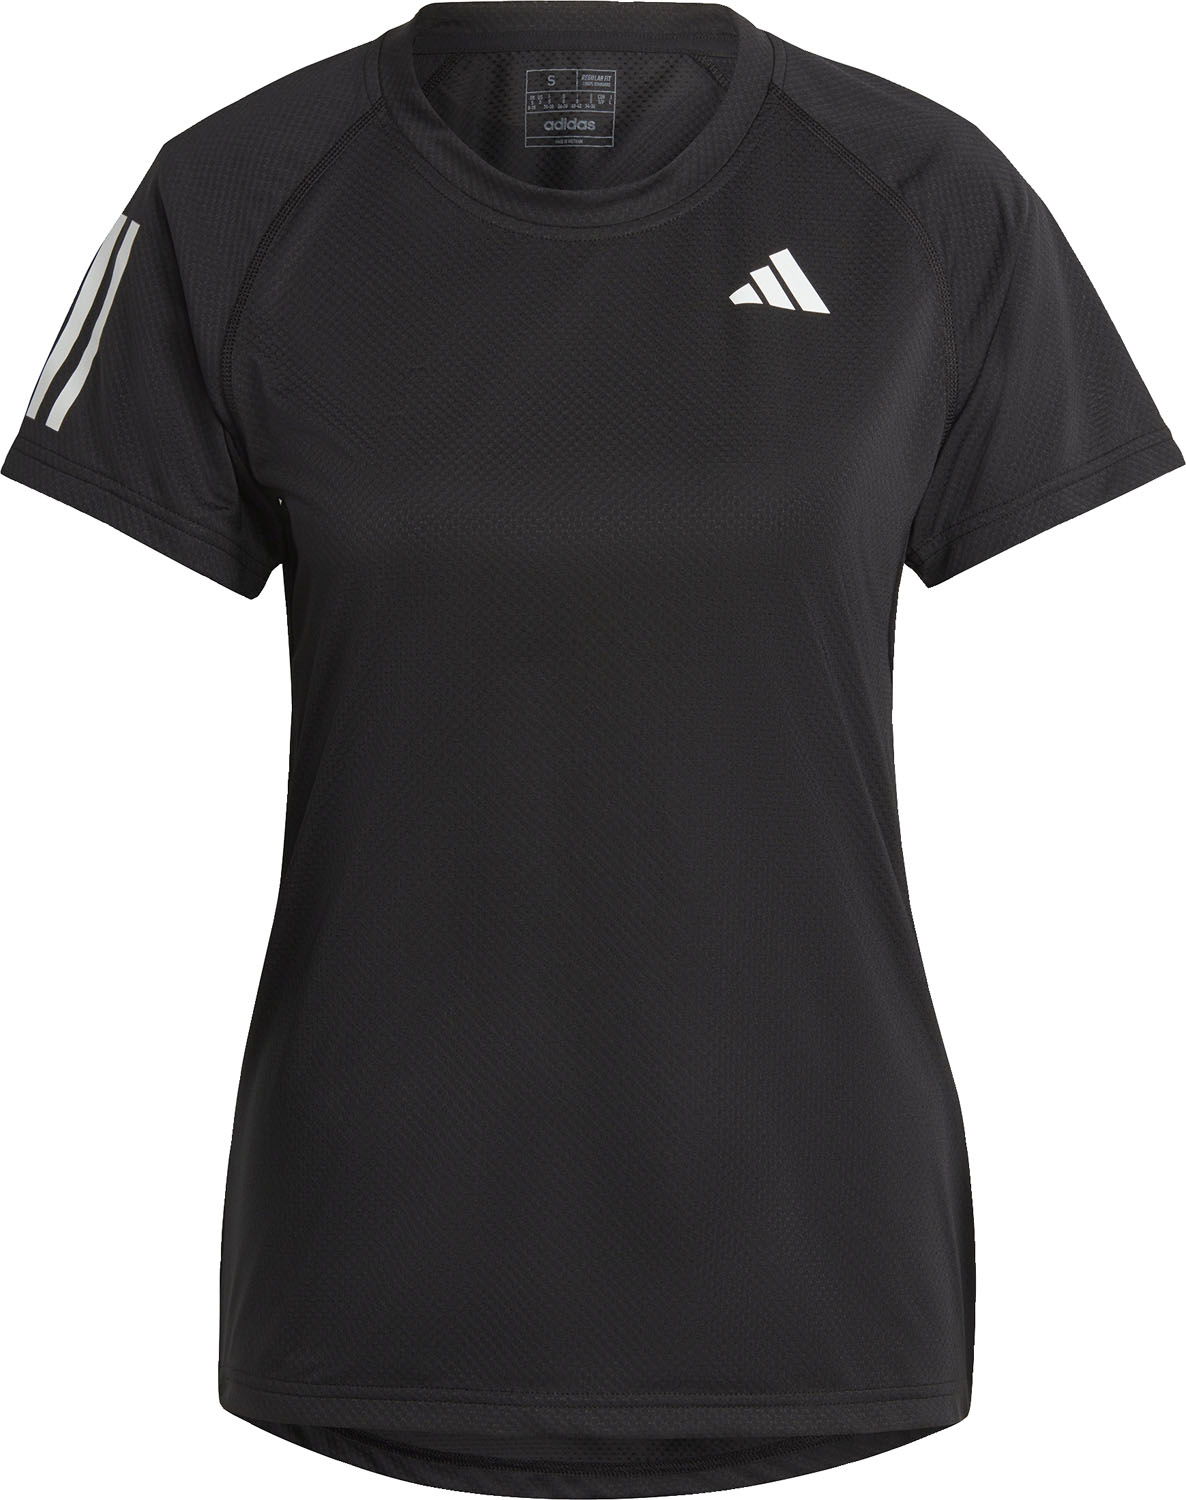 【5日まで全品3%OFFクーポン&ポイントアップ】 adidas アディダス テニス クラブ テニス 半袖Tシャツ NEH19 HS1450